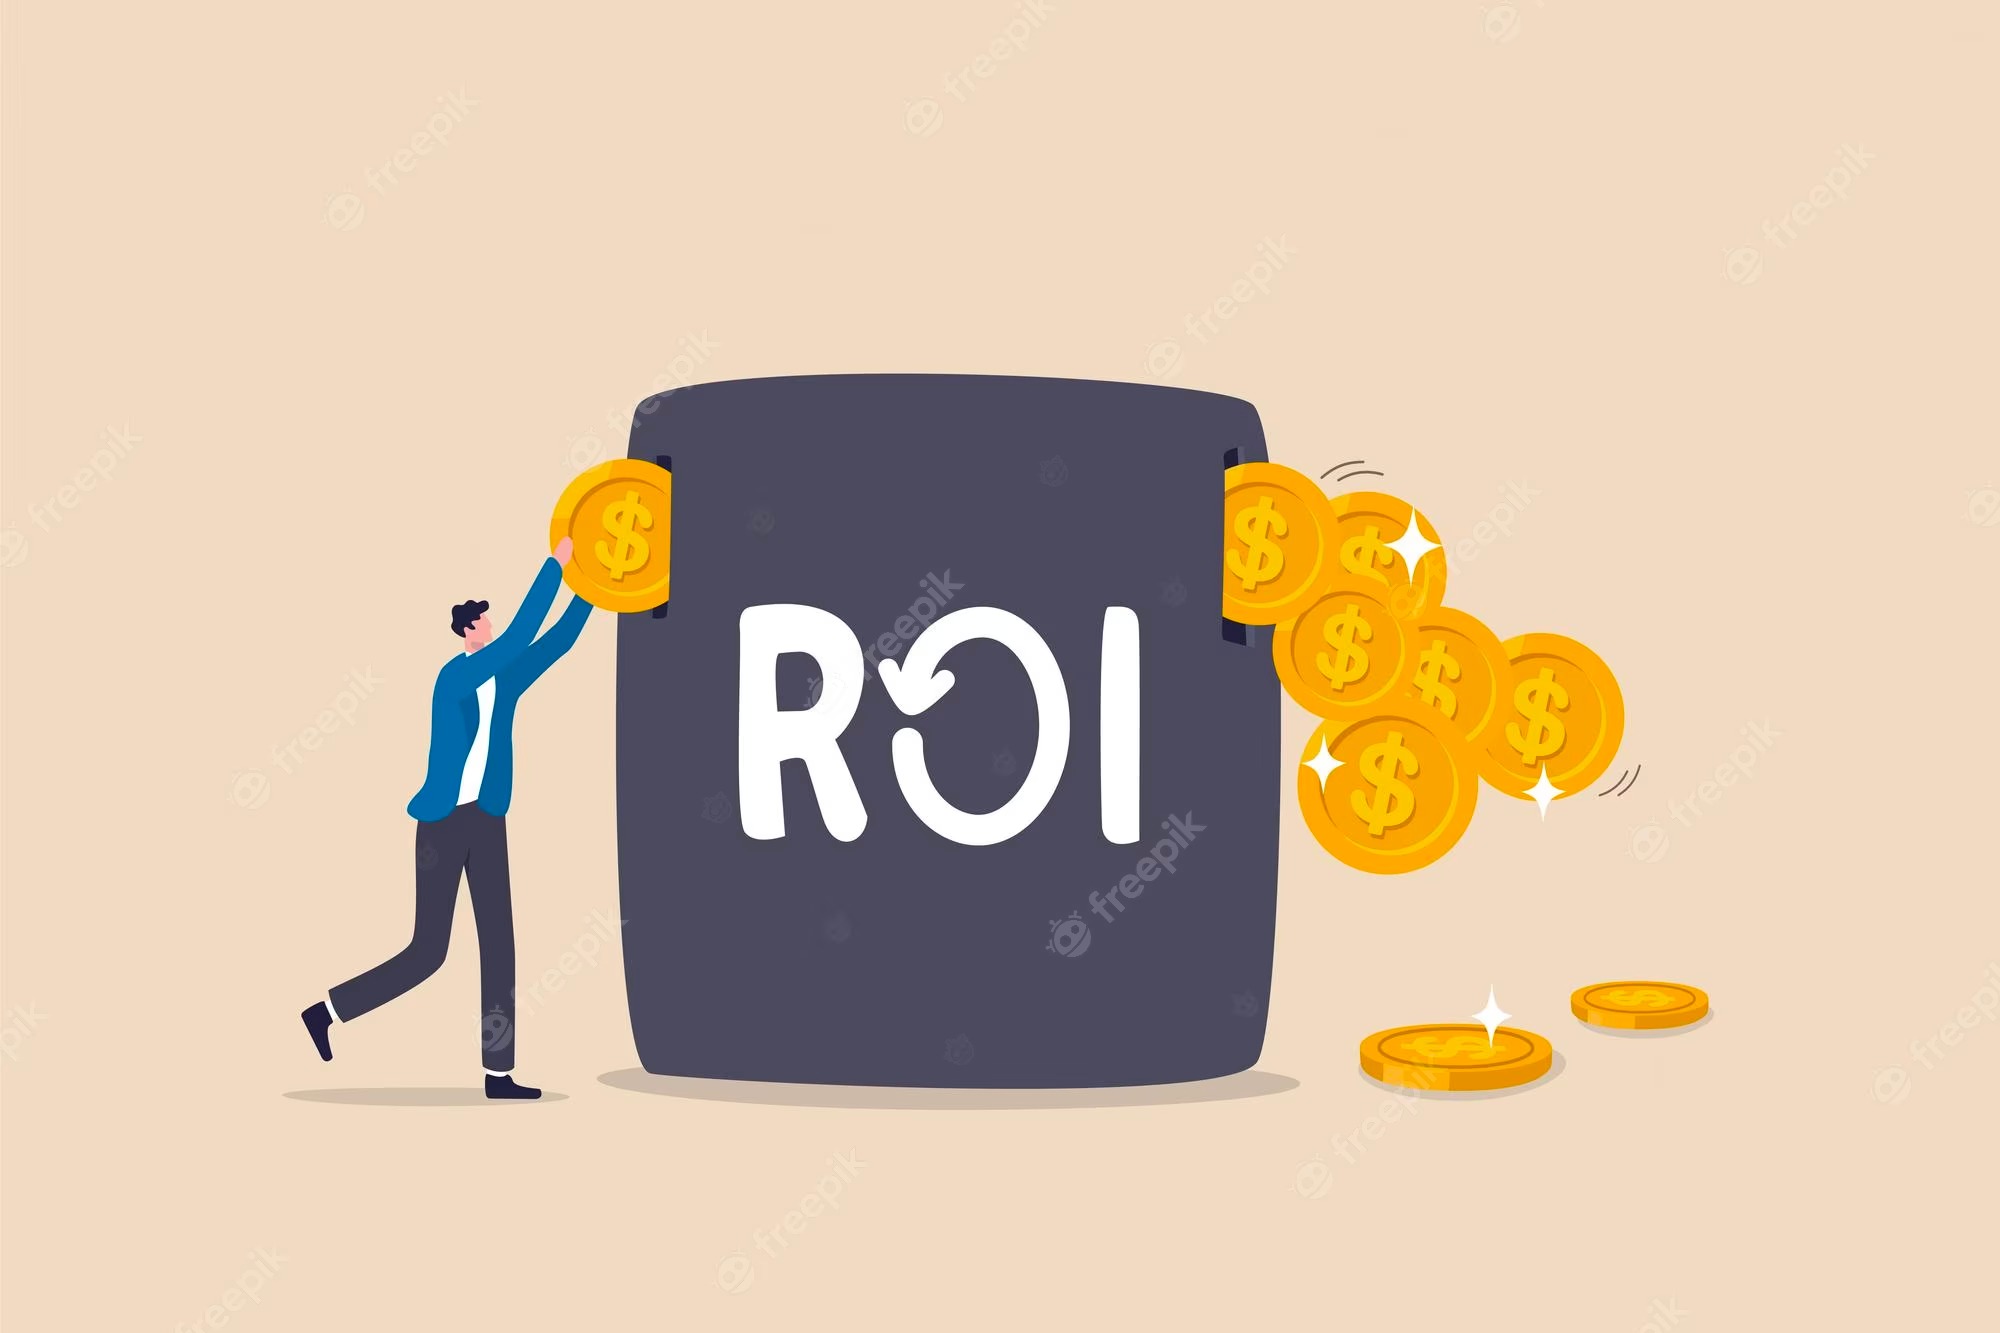 Chỉ số ROI là gì? Cách tính ROI trong marketing